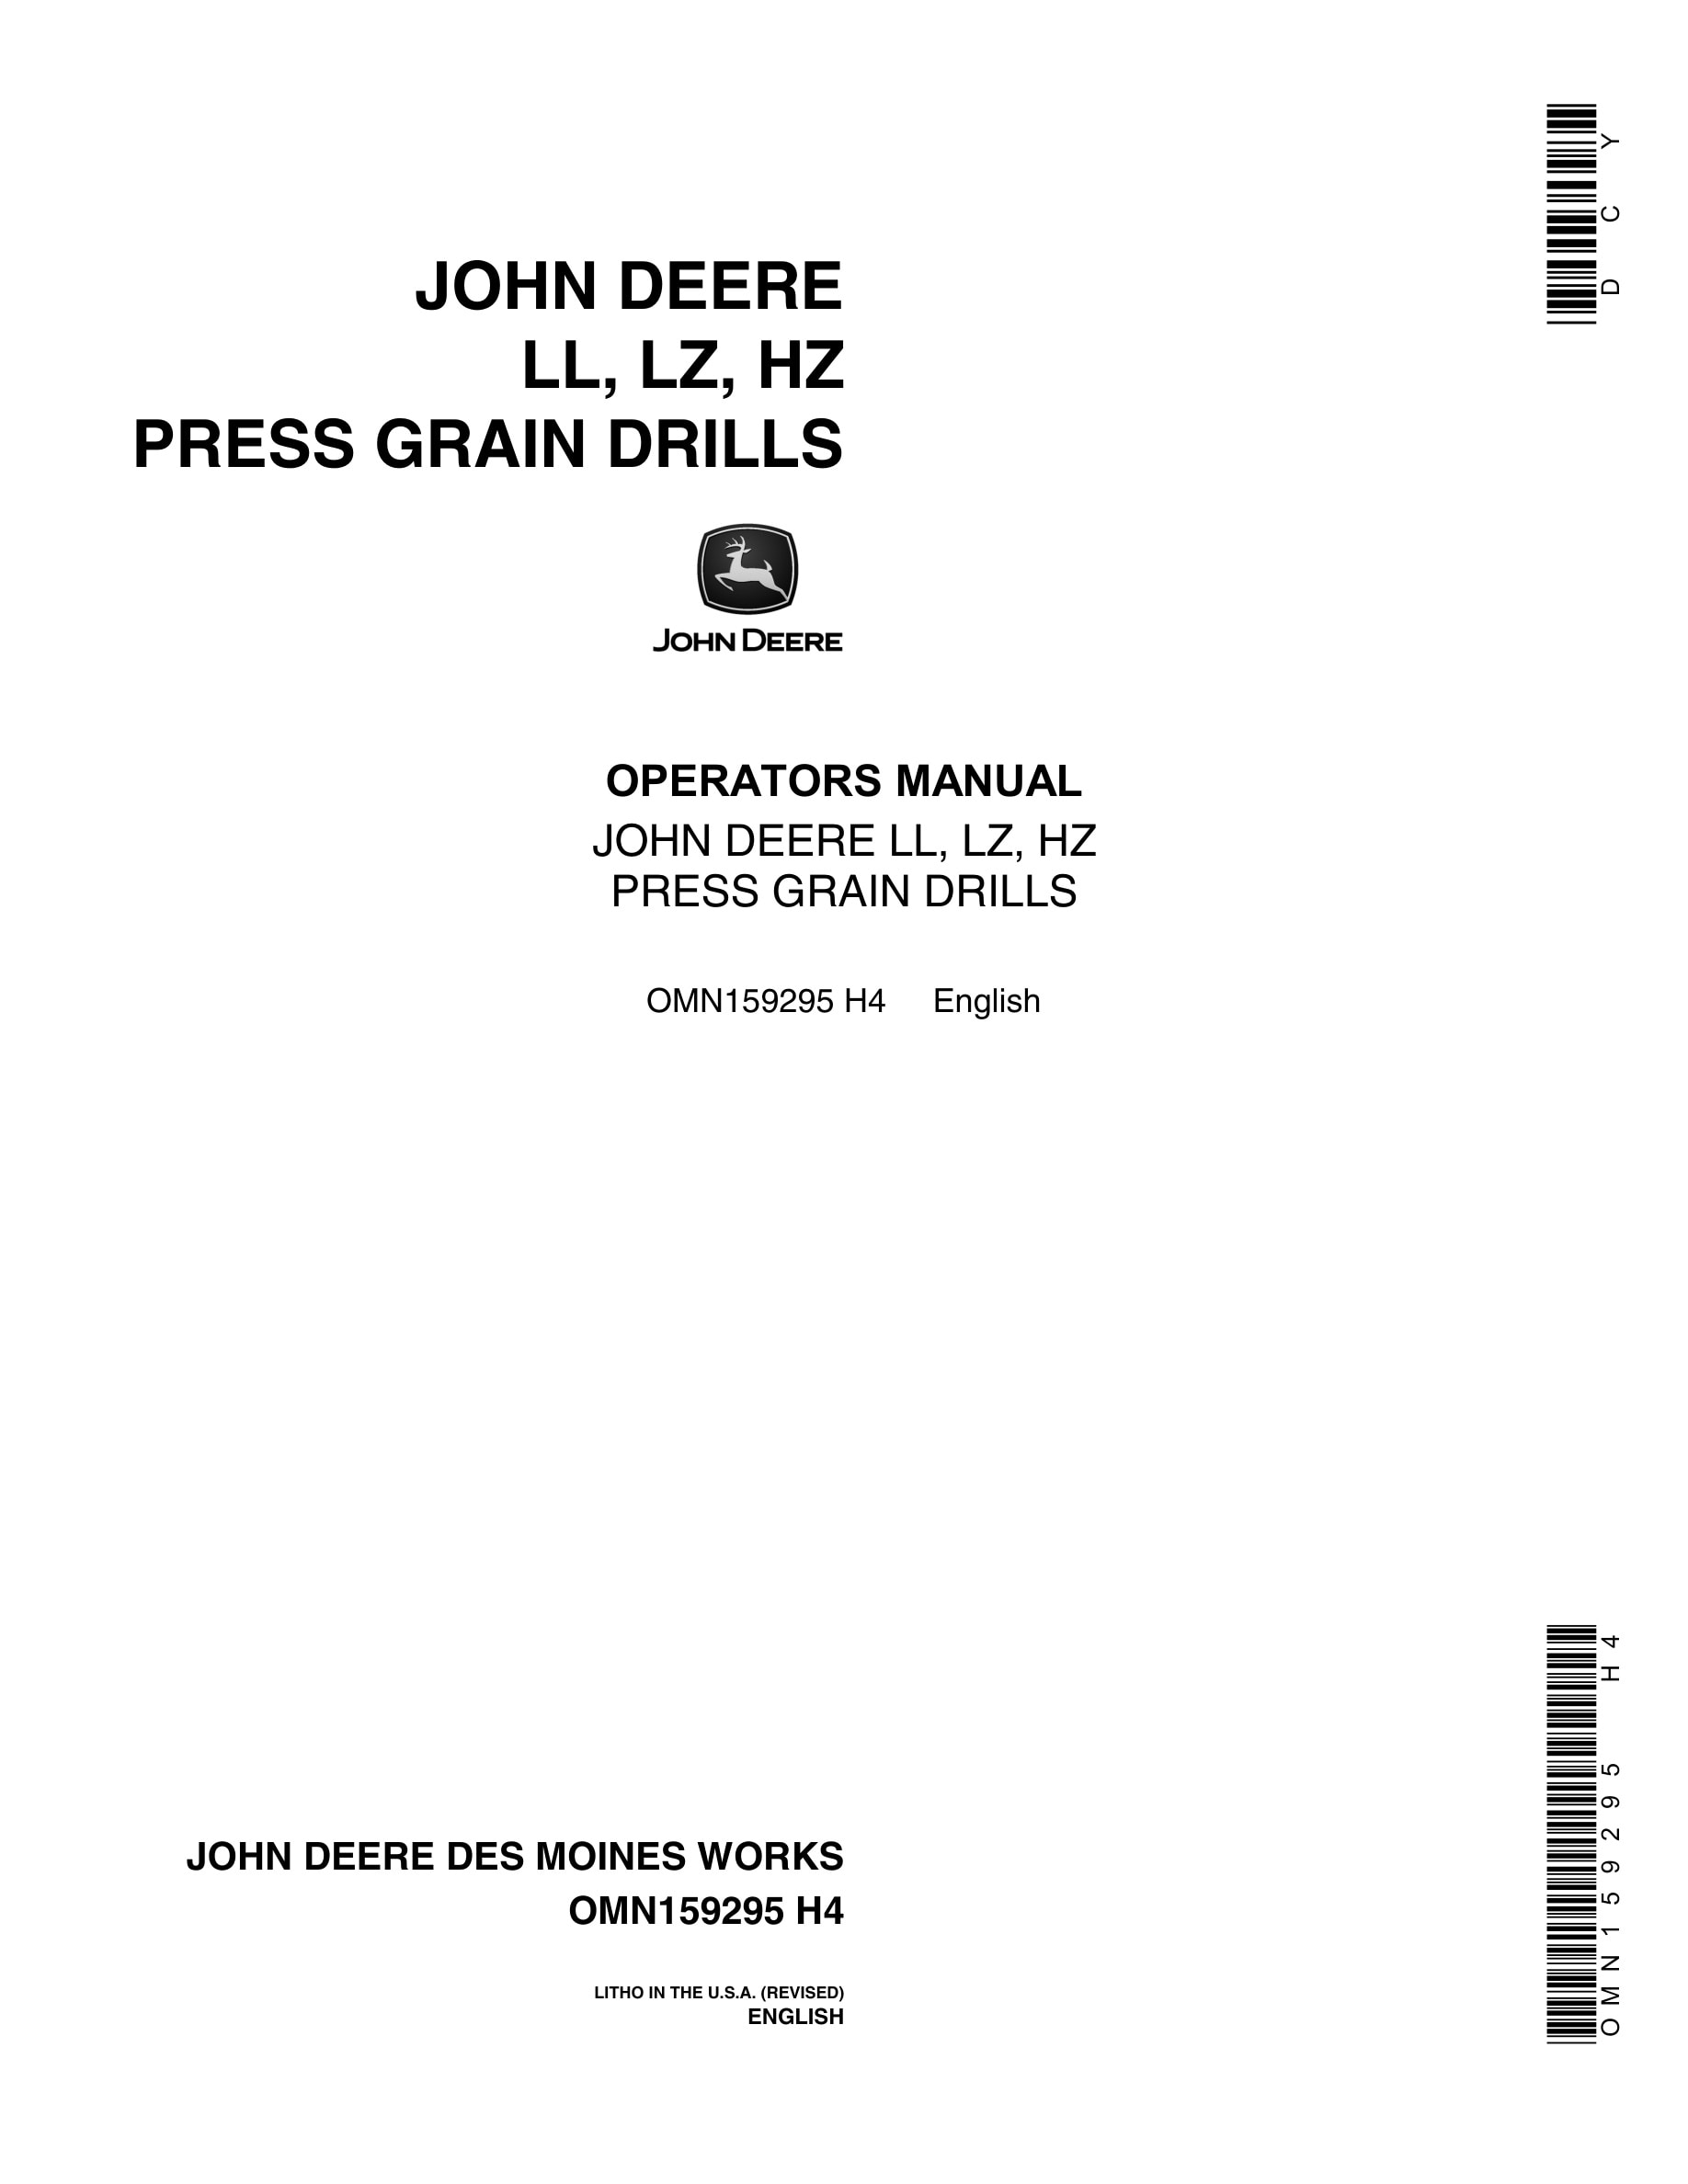 John Deere LL, LZ, HZ PRESS GRAIN DRILL Operator Manual OMN159295-1